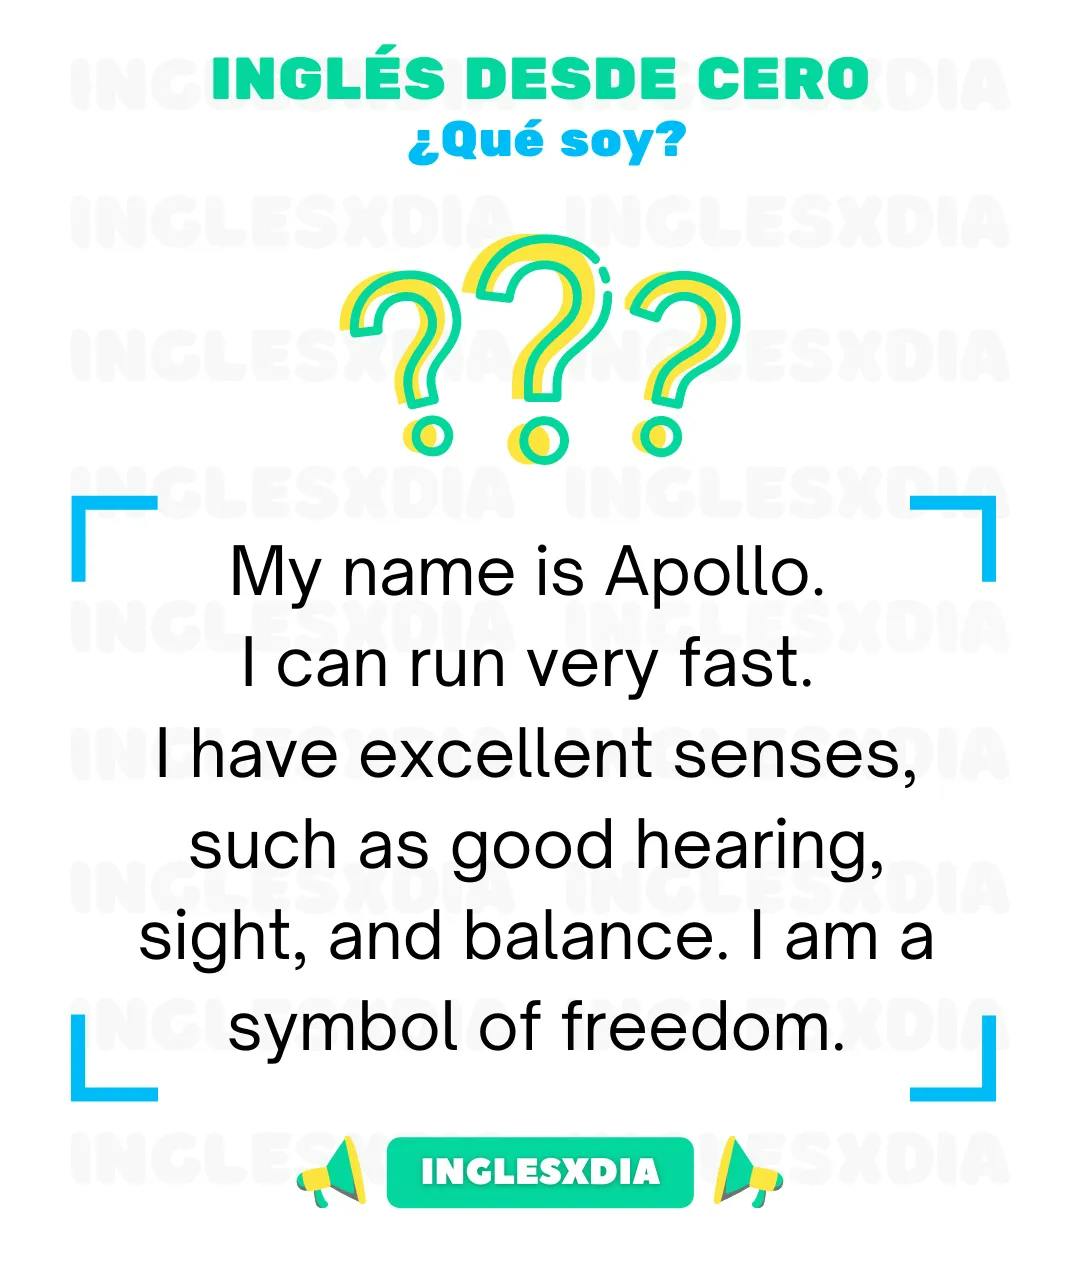 I am Apollo